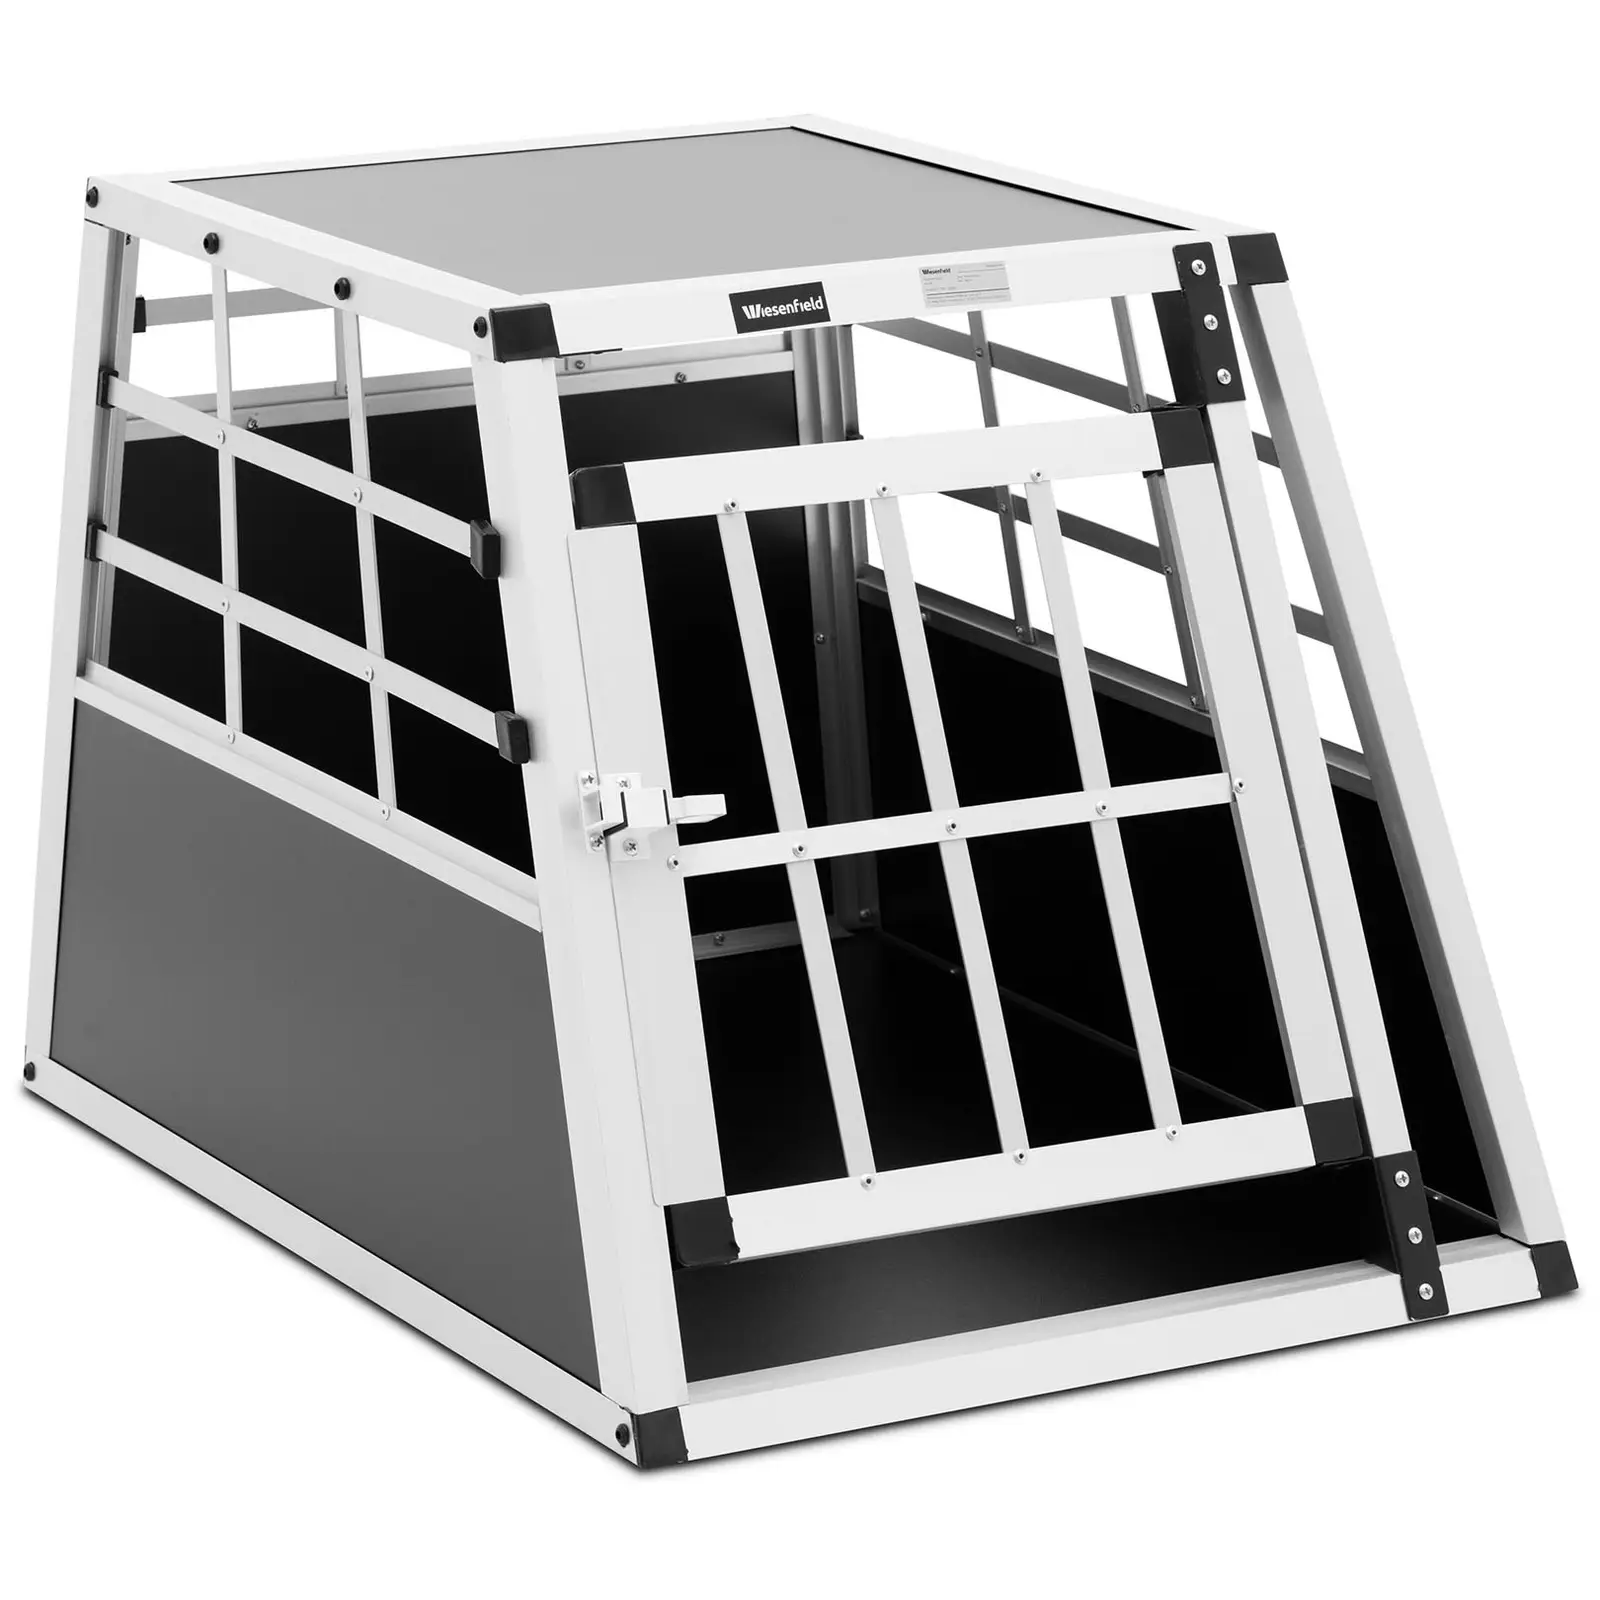 Caixa de transporte para cães - alumínio - forma trapezoidal - 55 x 70 x 50 cm